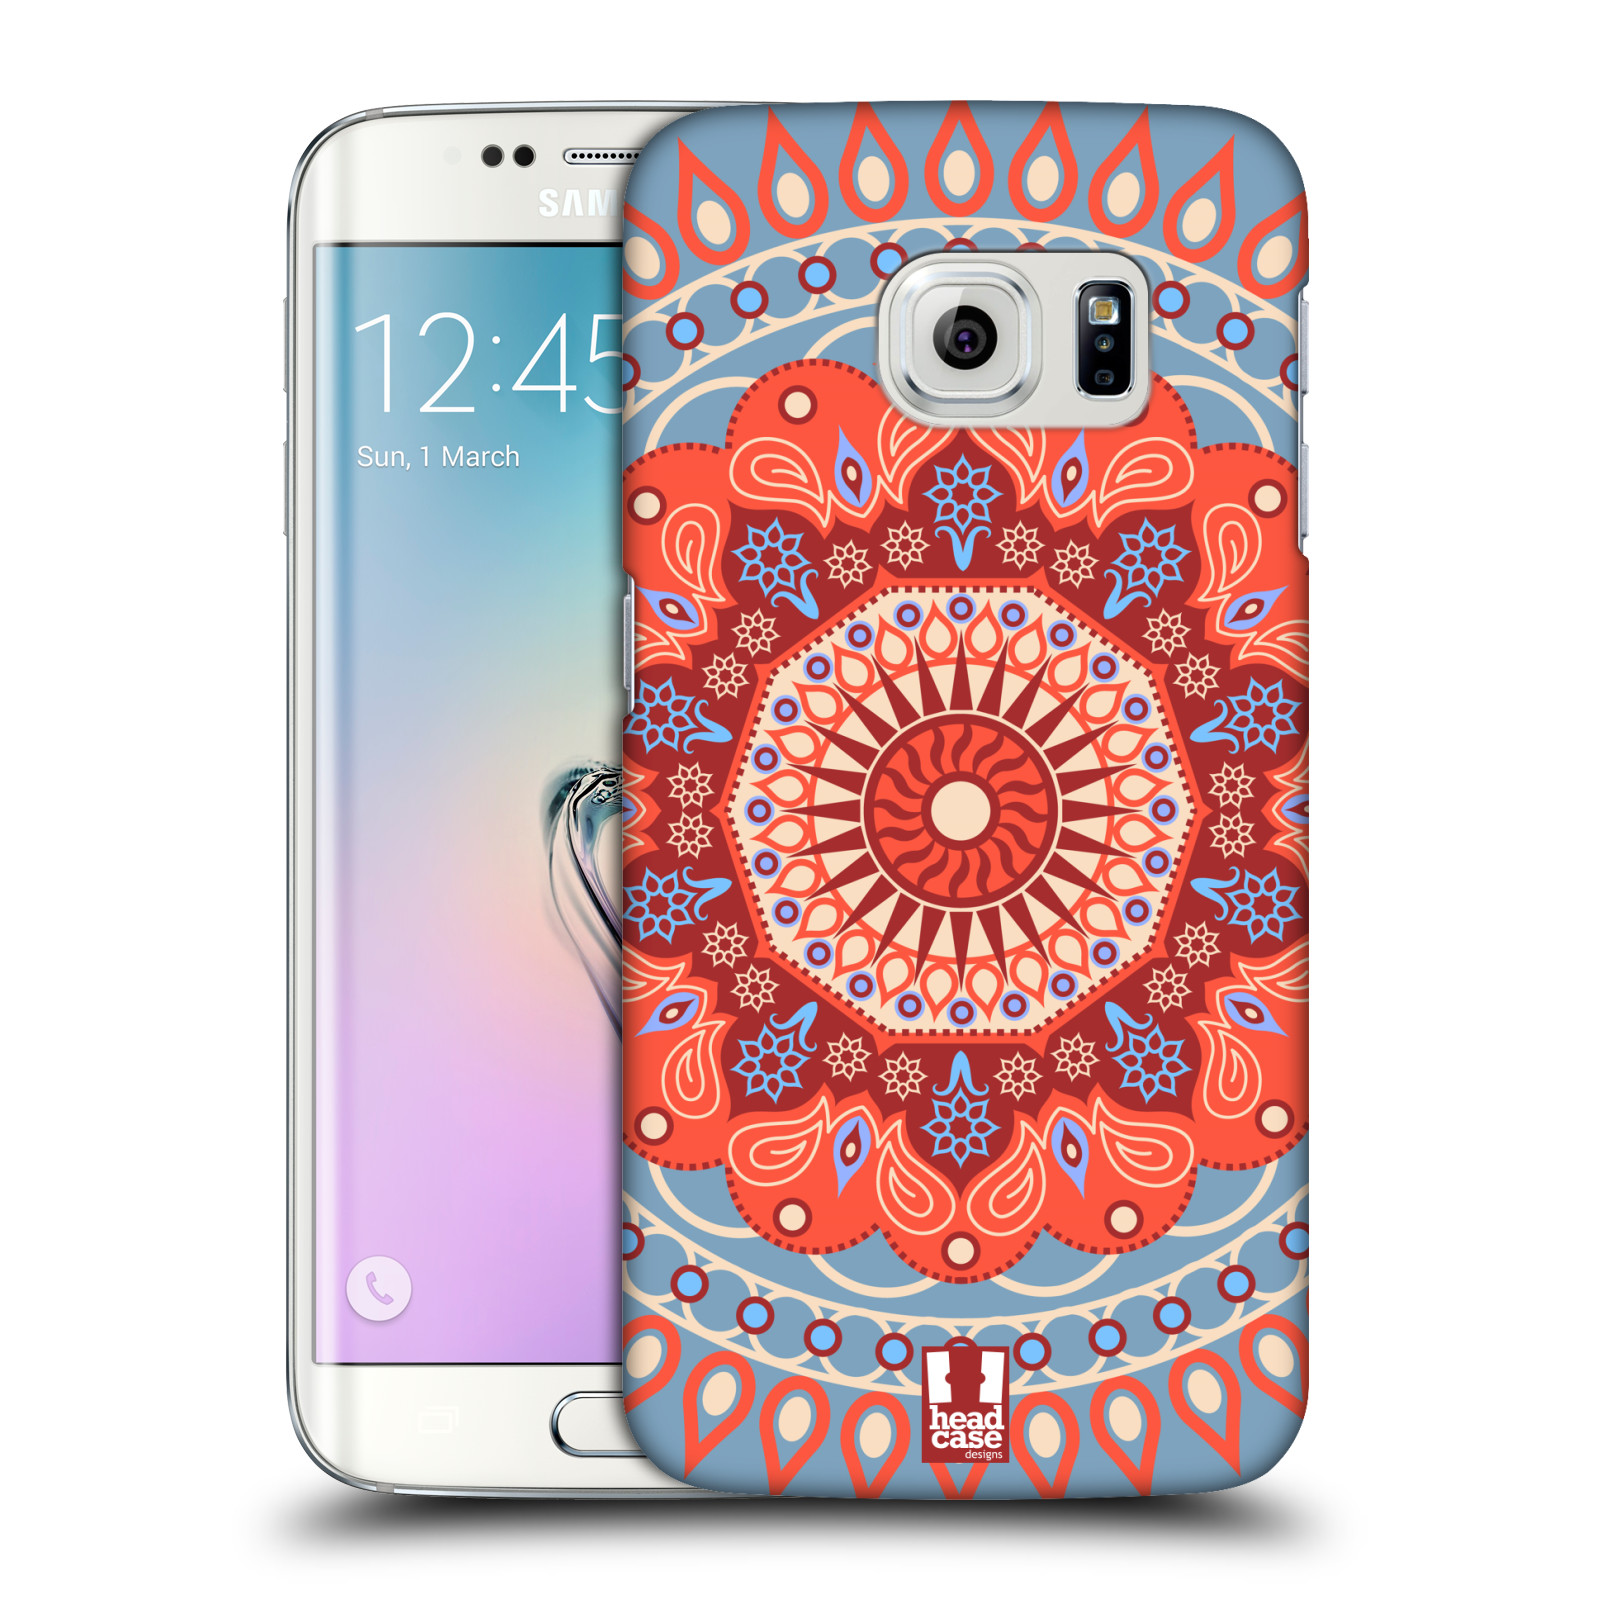 HEAD CASE plastový obal na mobil SAMSUNG Galaxy S6 EDGE (G9250, G925, G925F) vzor Indie Mandala slunce barevný motiv ČERVENÁ A MODRÁ